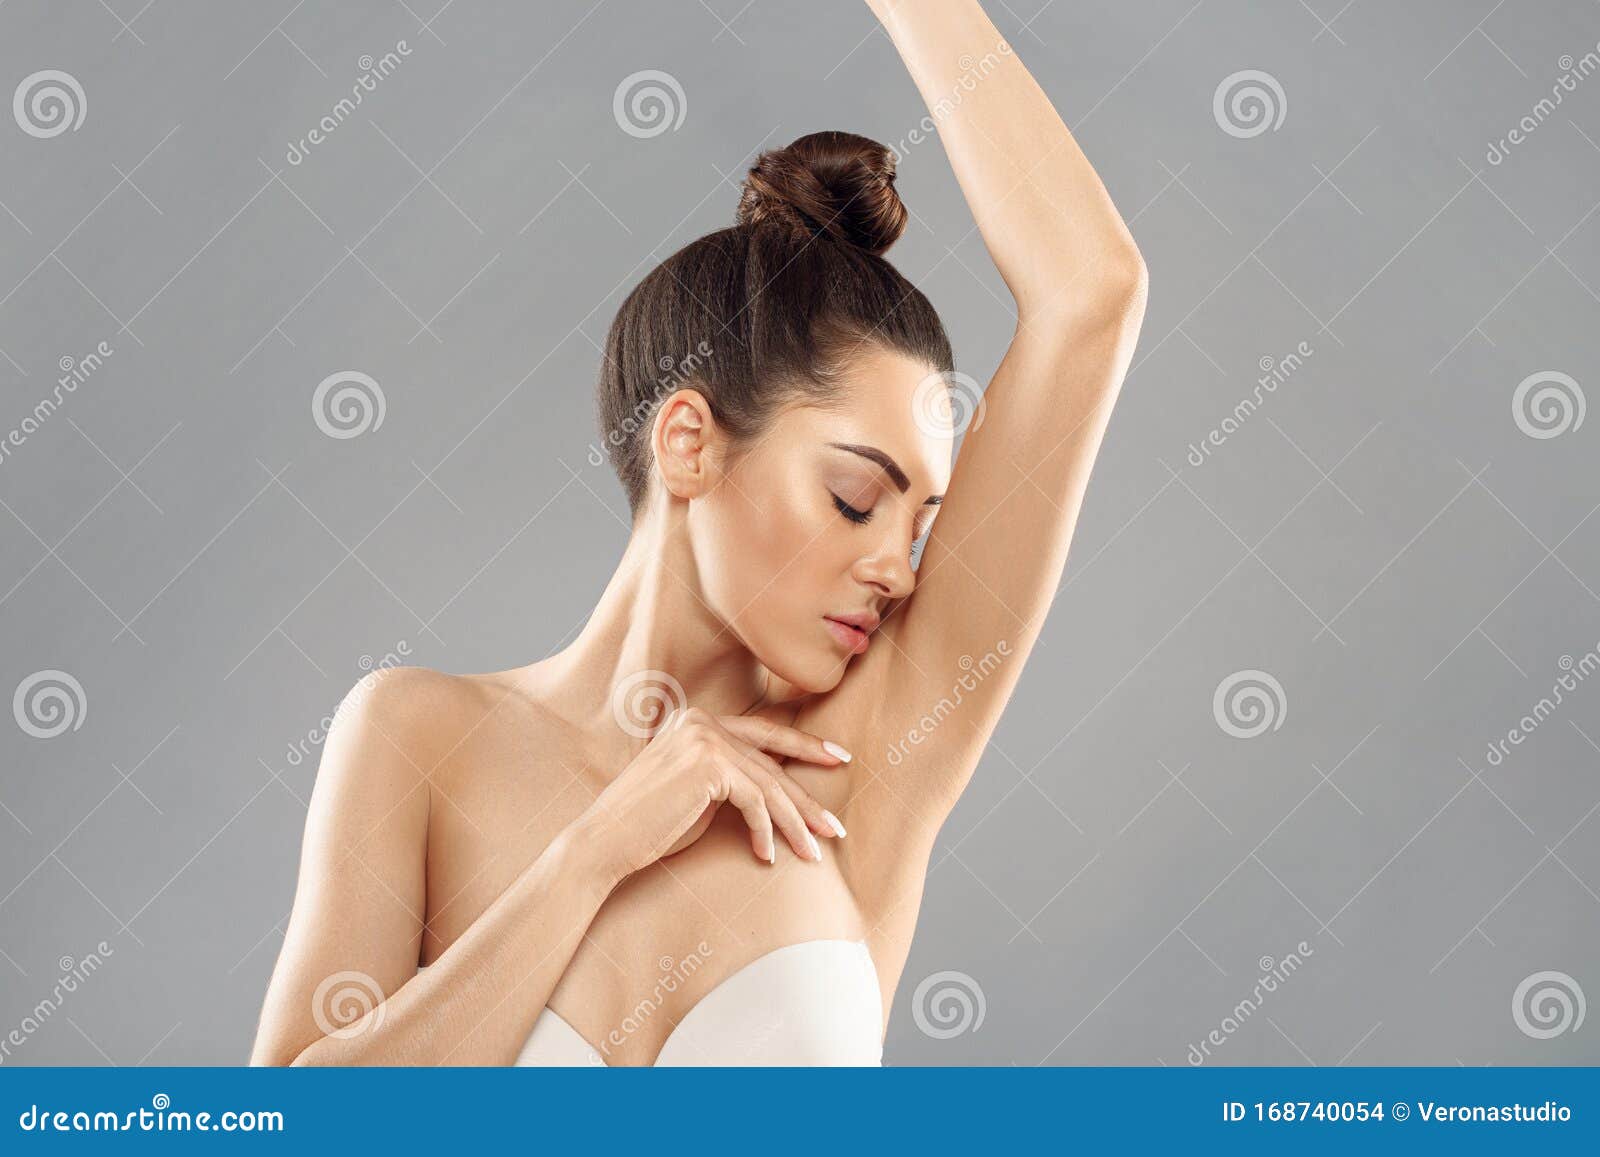 腋毛脱毛 脱毛年轻女子举着双臂 展示干净的腋下 脱毛光滑的皮肤库存照片 图片包括有腋窝 整容术